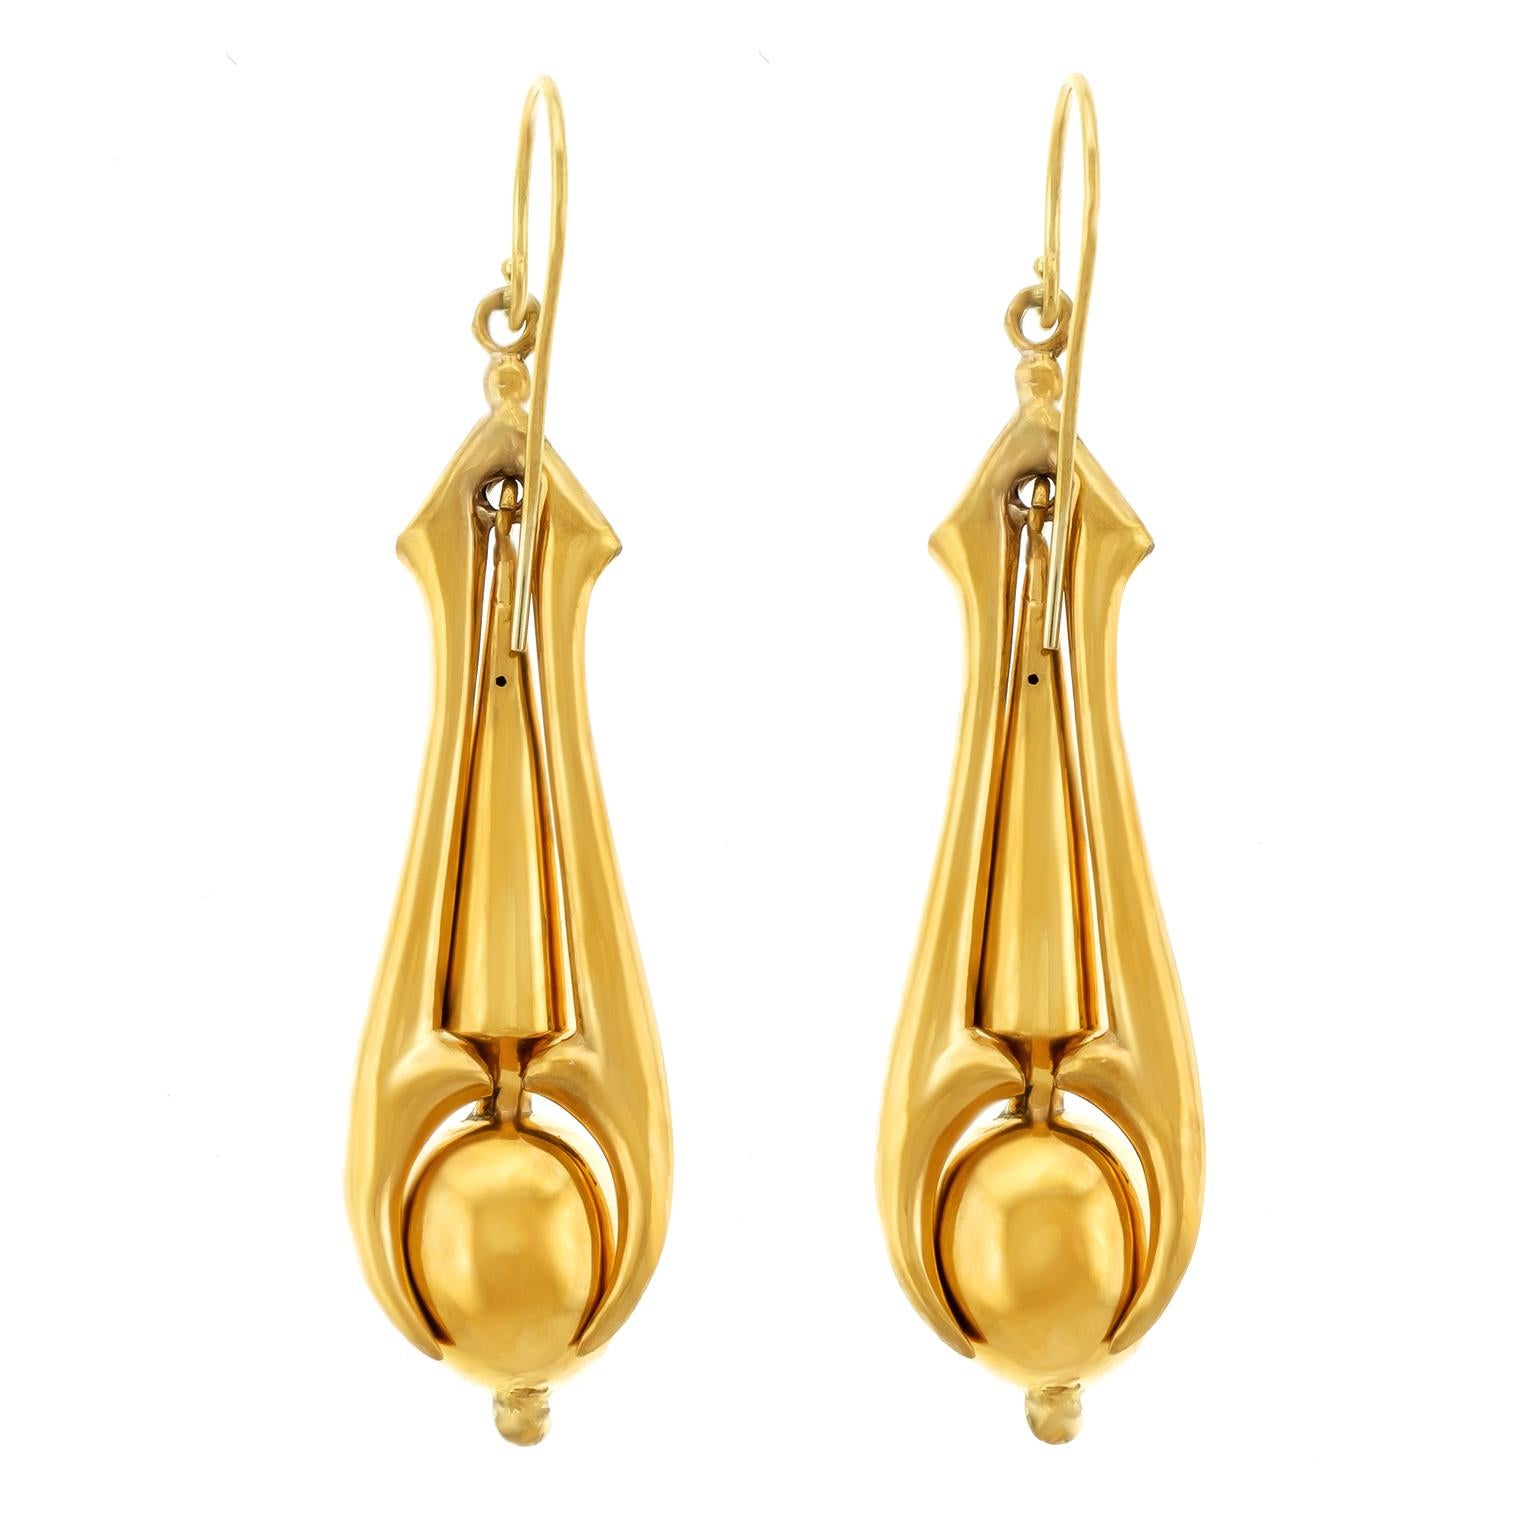 Antique Gold Chandelier Earrings 2